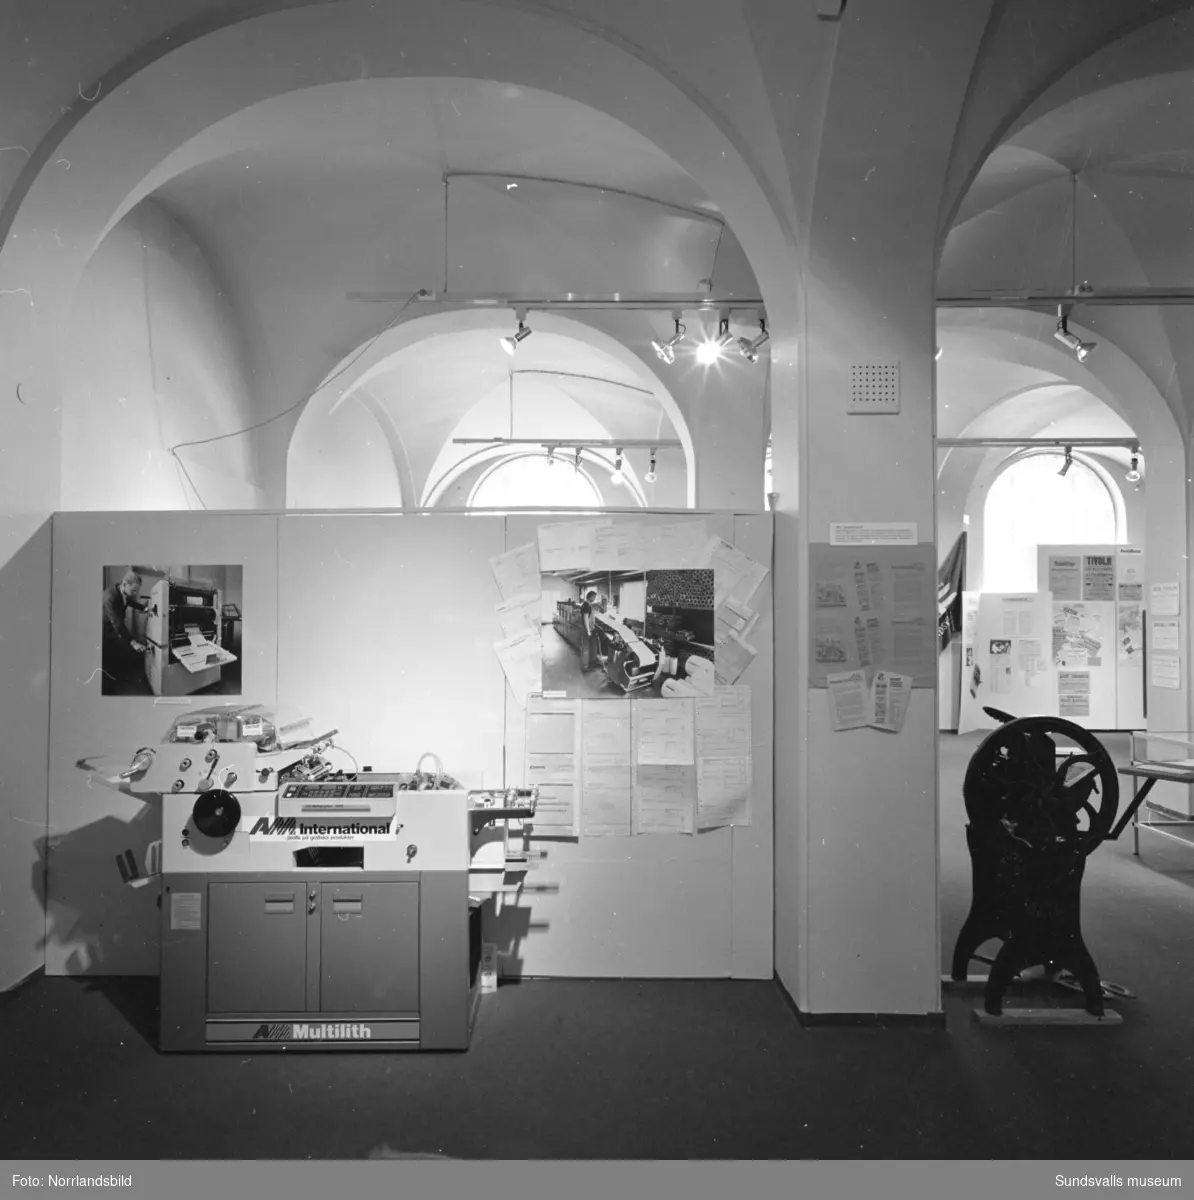 Invigning av utställningen "Tryckort Sundsvall" - en utställning om tryckerihistoria i Sundsvall arrangerad av Sundsvalls museum och Sundsvalls grafiska klubb, 7/5-28/8 1983. Det tryckta ordet 500 år. De tre sista bilderna visar en skärmutställning på postkontoret.